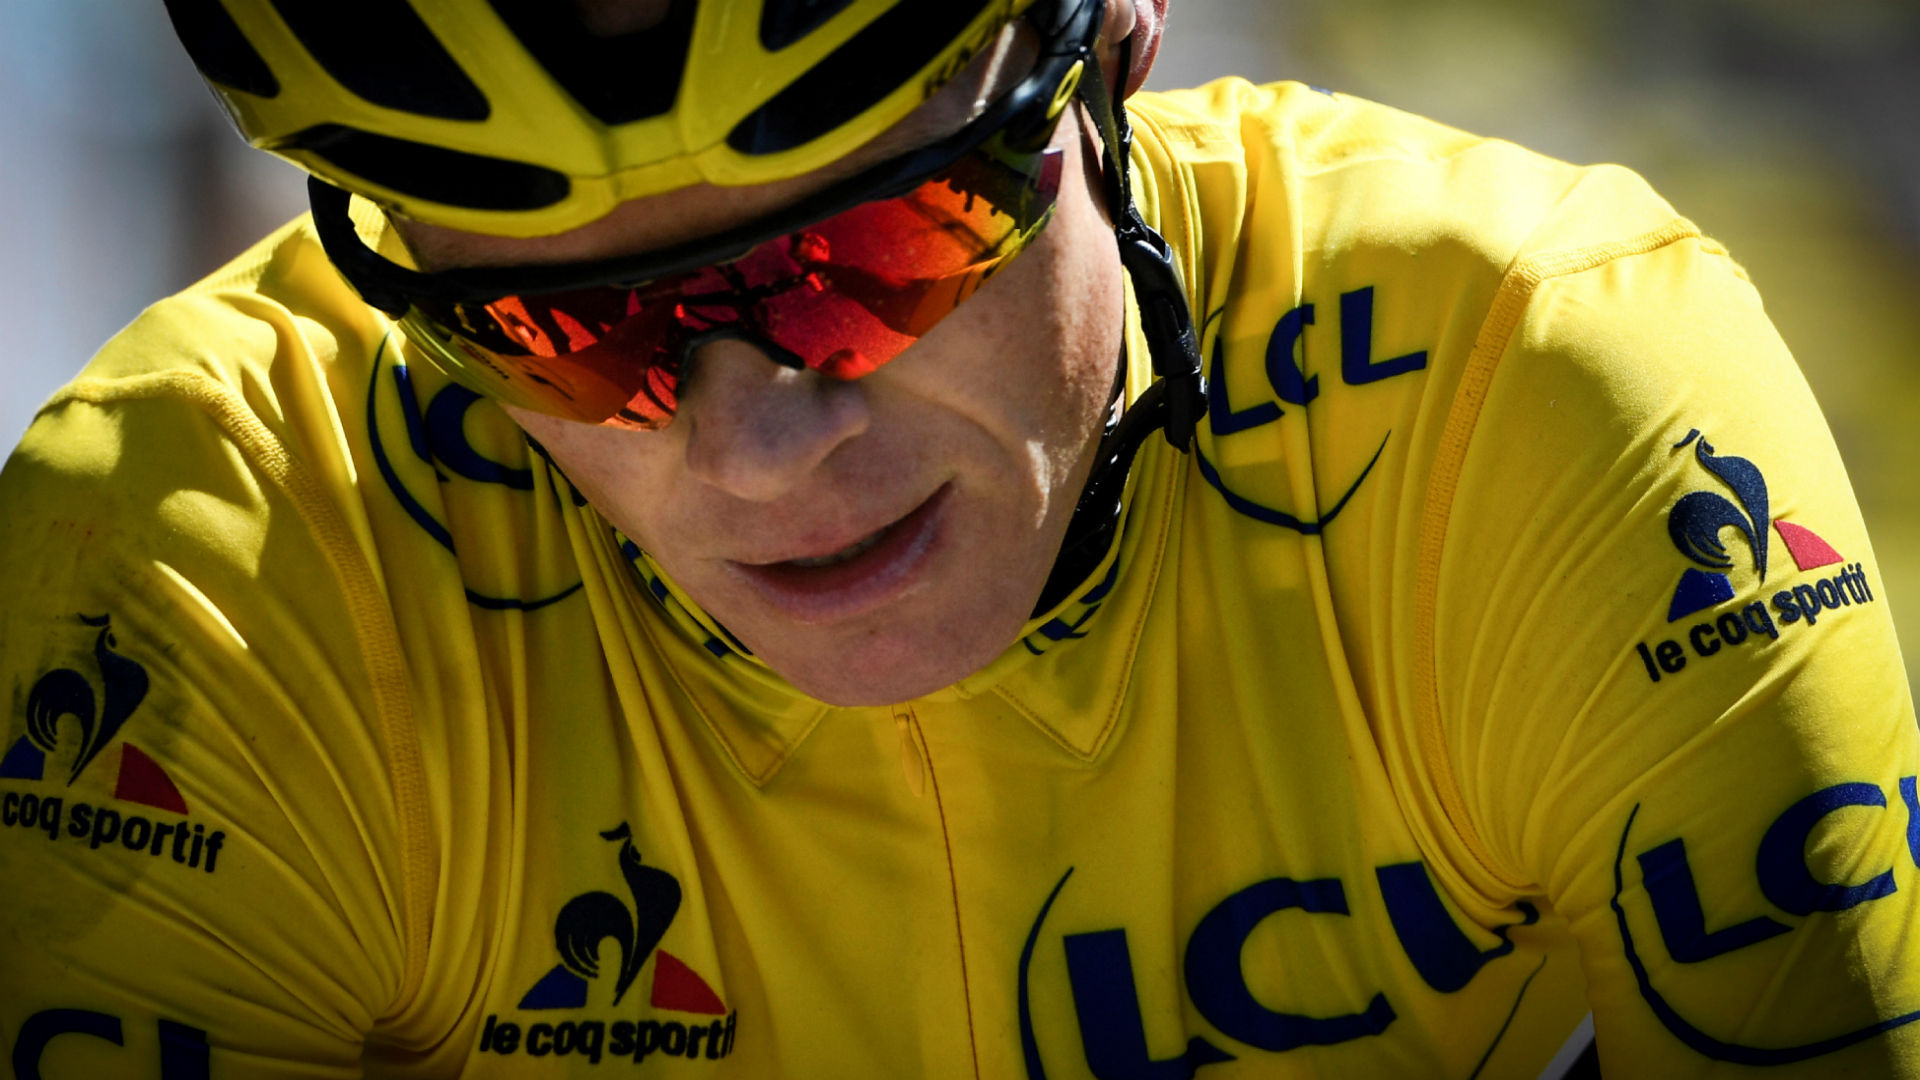 Chris Froome da una explicación al positivo en dopaje en la Vuelta a España 2017